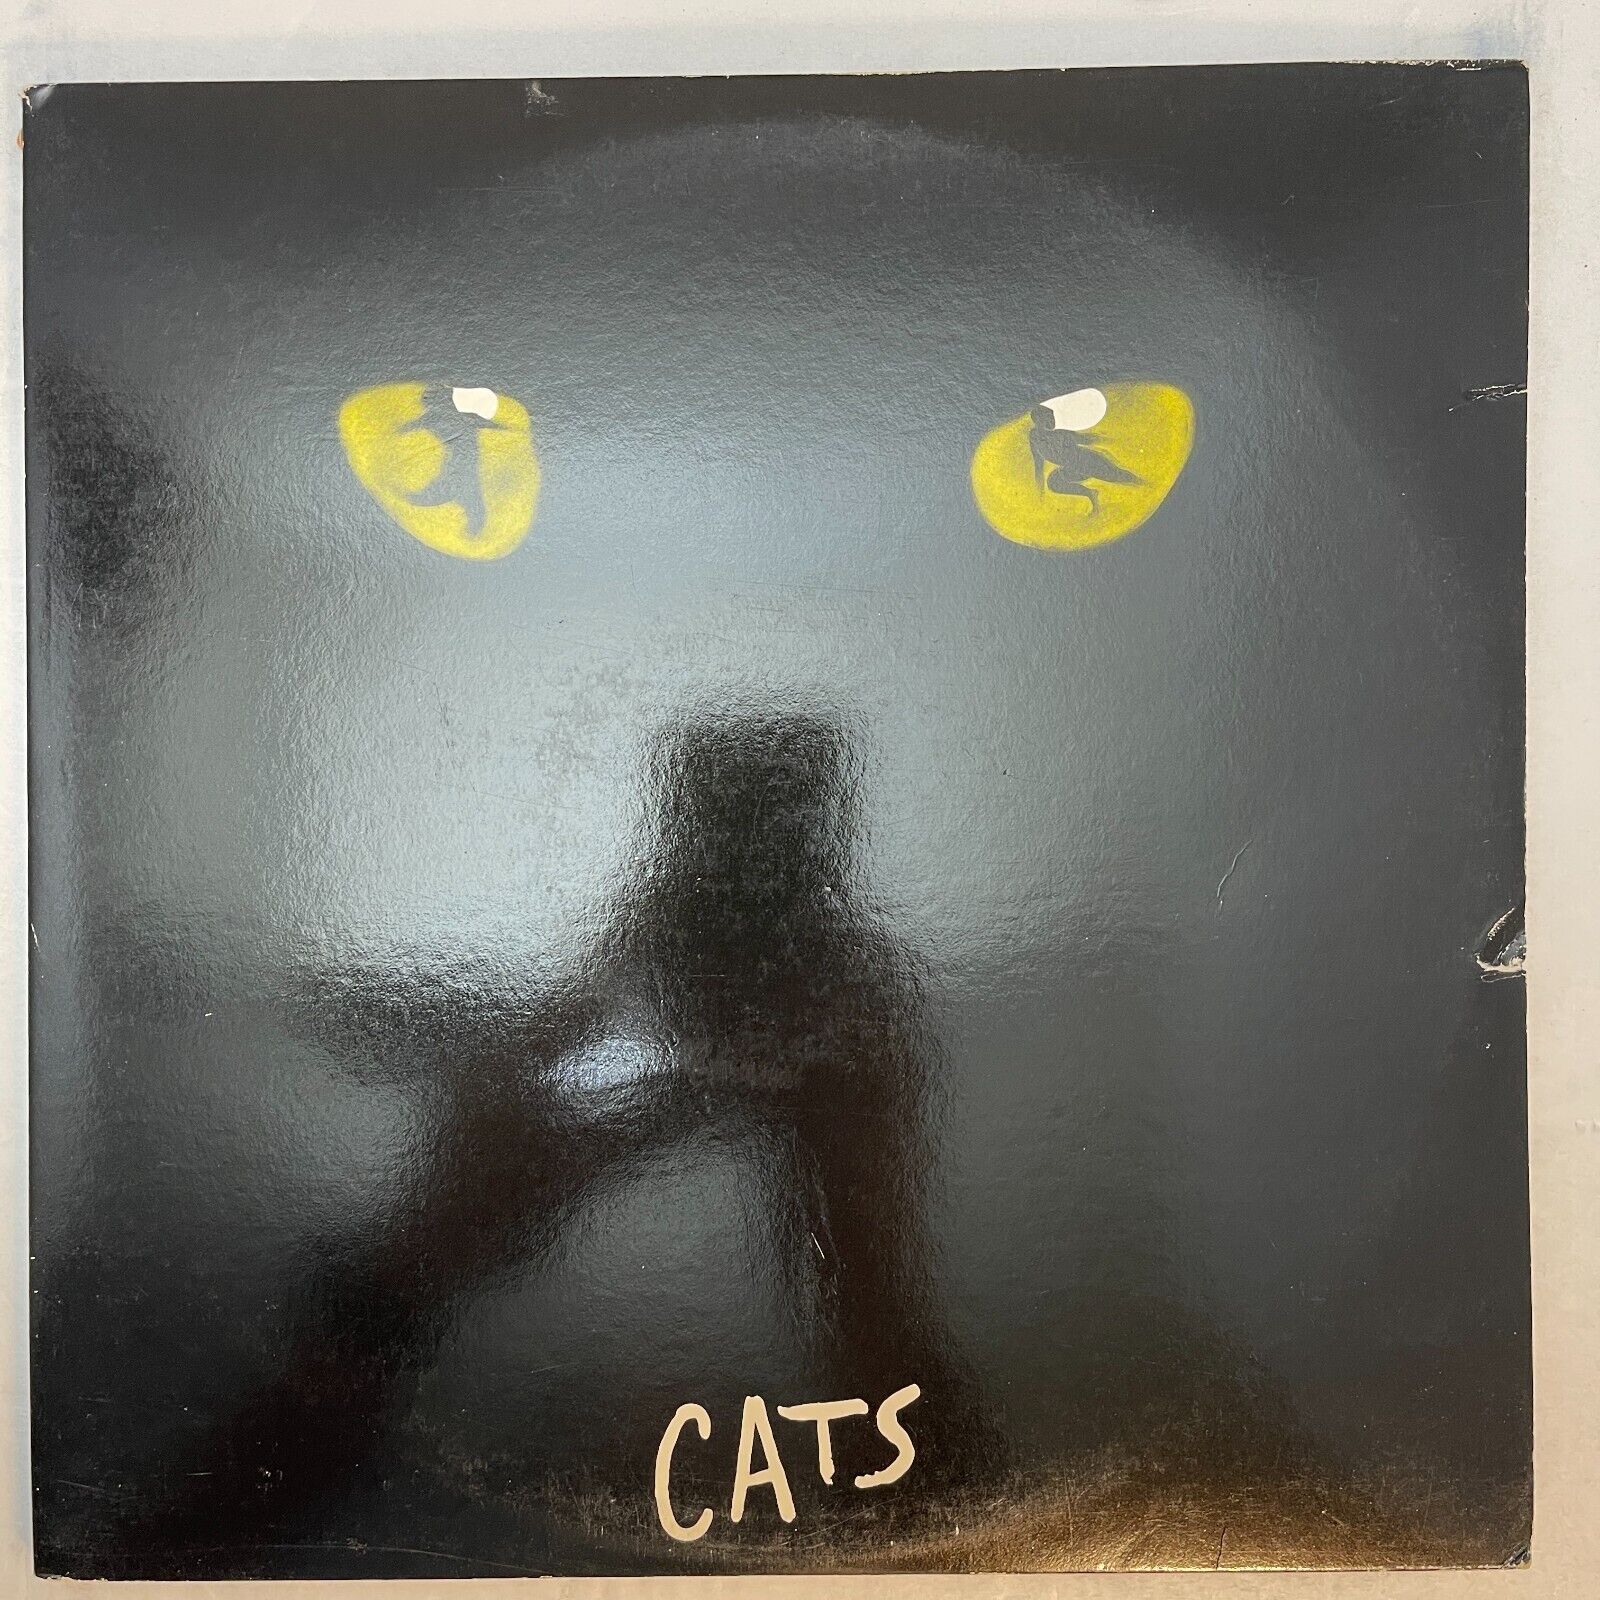 Cats (Complete Original Broadway Cast Recording) Andrew Lloyd Webber ‎– Vinyl